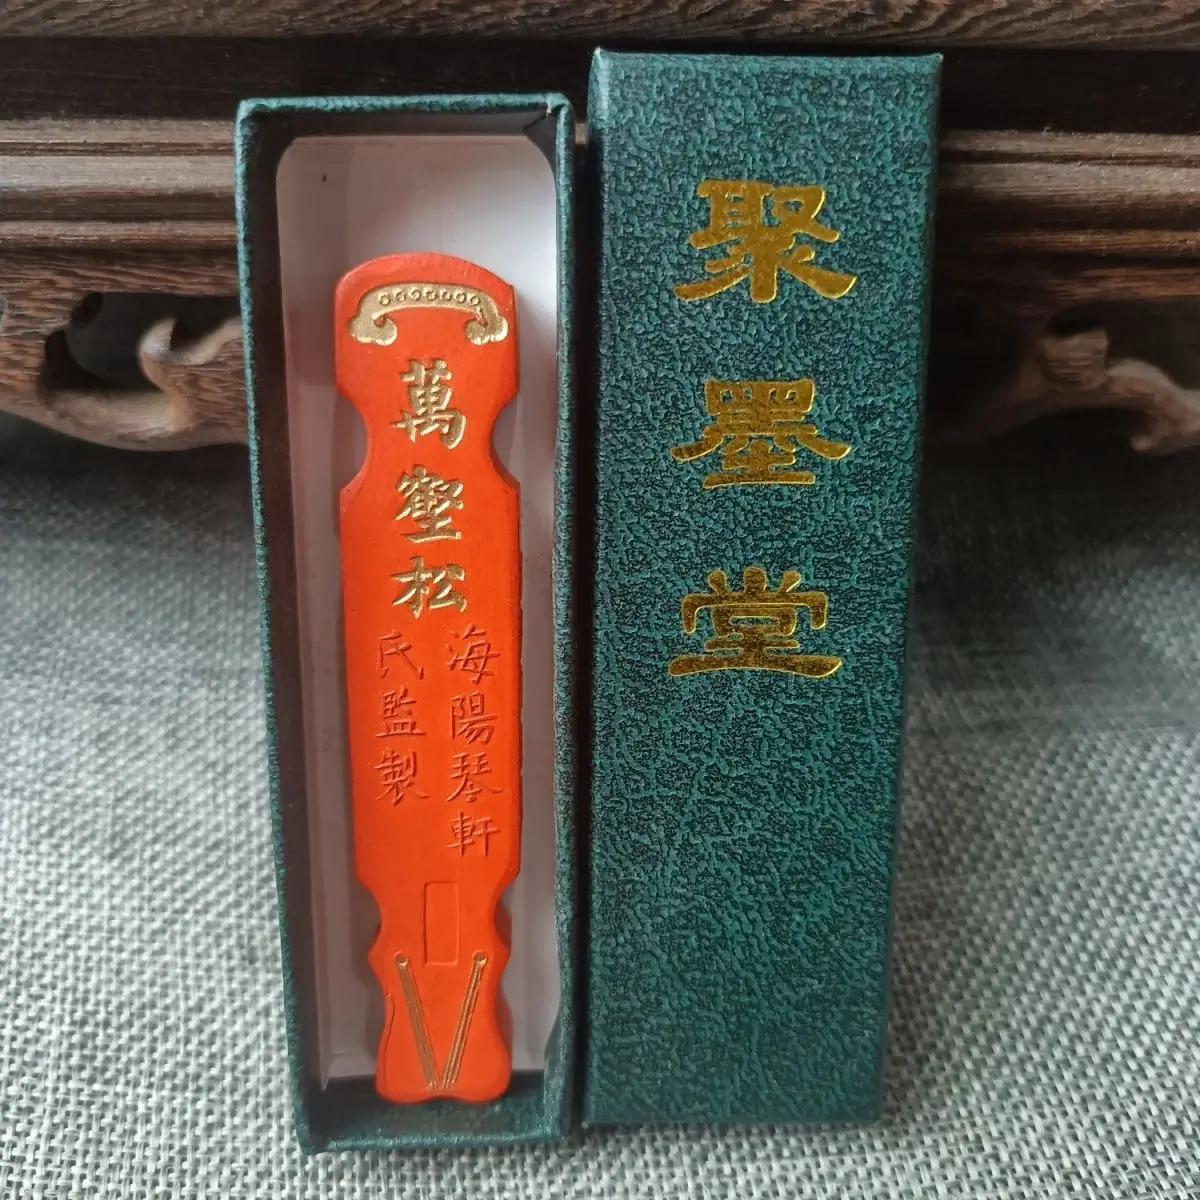 Hui Xi Cheng Junfang Jumotang Old Collection  ũ, ũ: 8.4, 1.6, 0.8cm, 45.9g